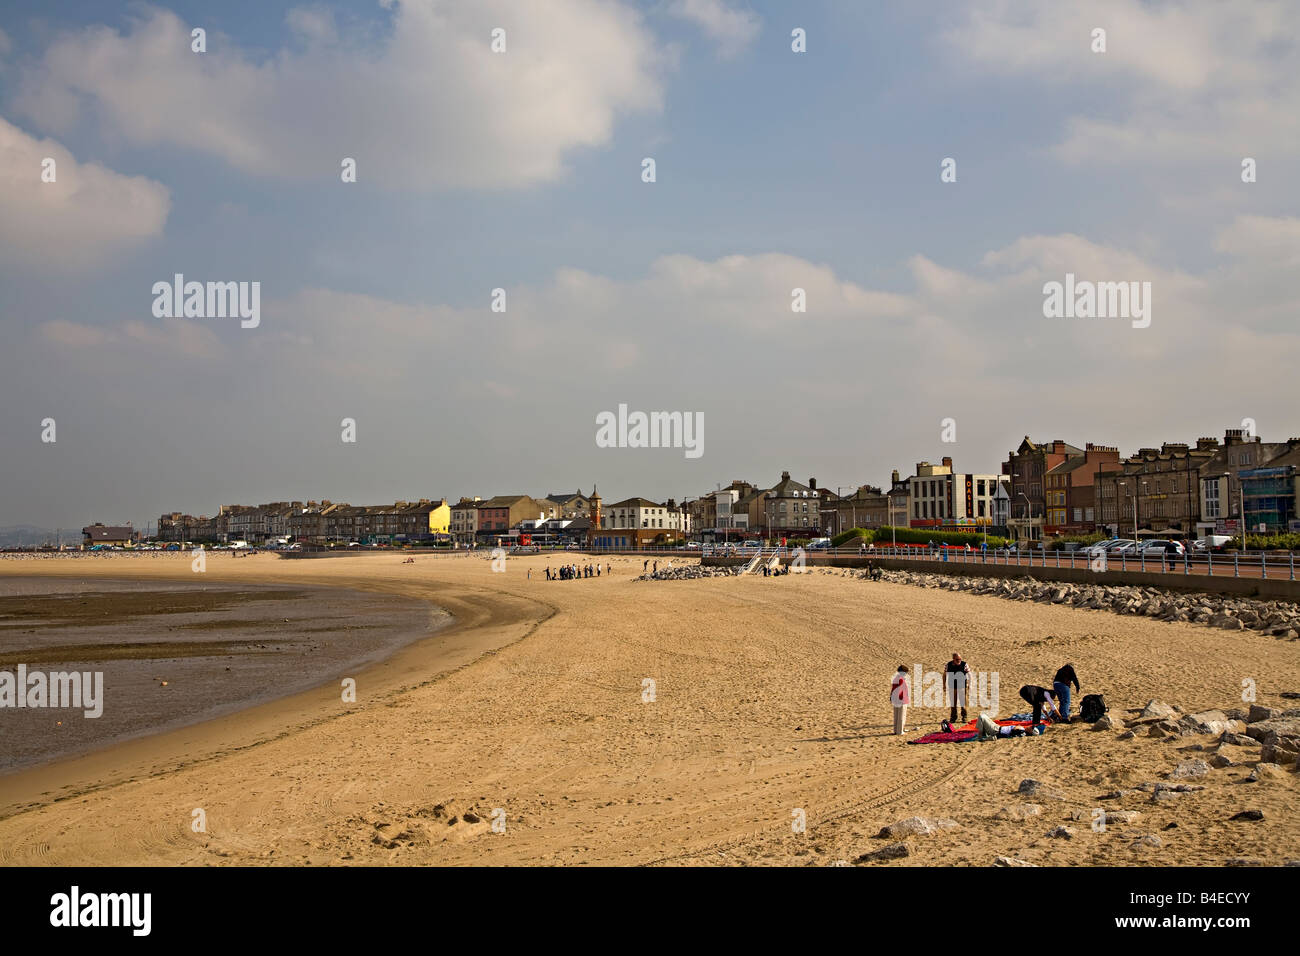 Beach and seafront hotels Morecambe Lancashire England UK Stock Photo